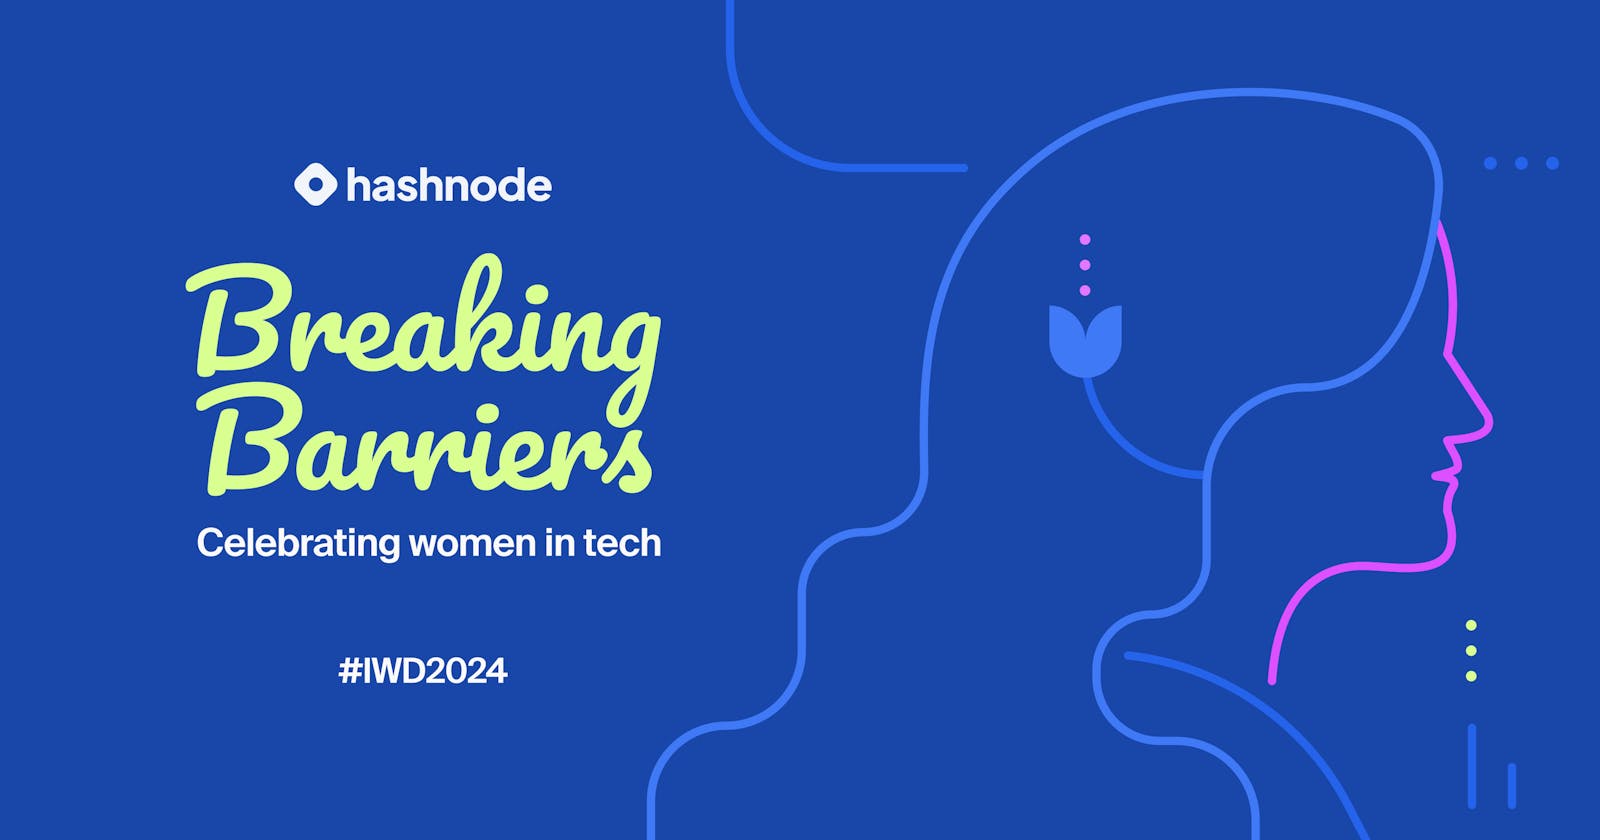 Breaking barriers: Celebrating women in tech